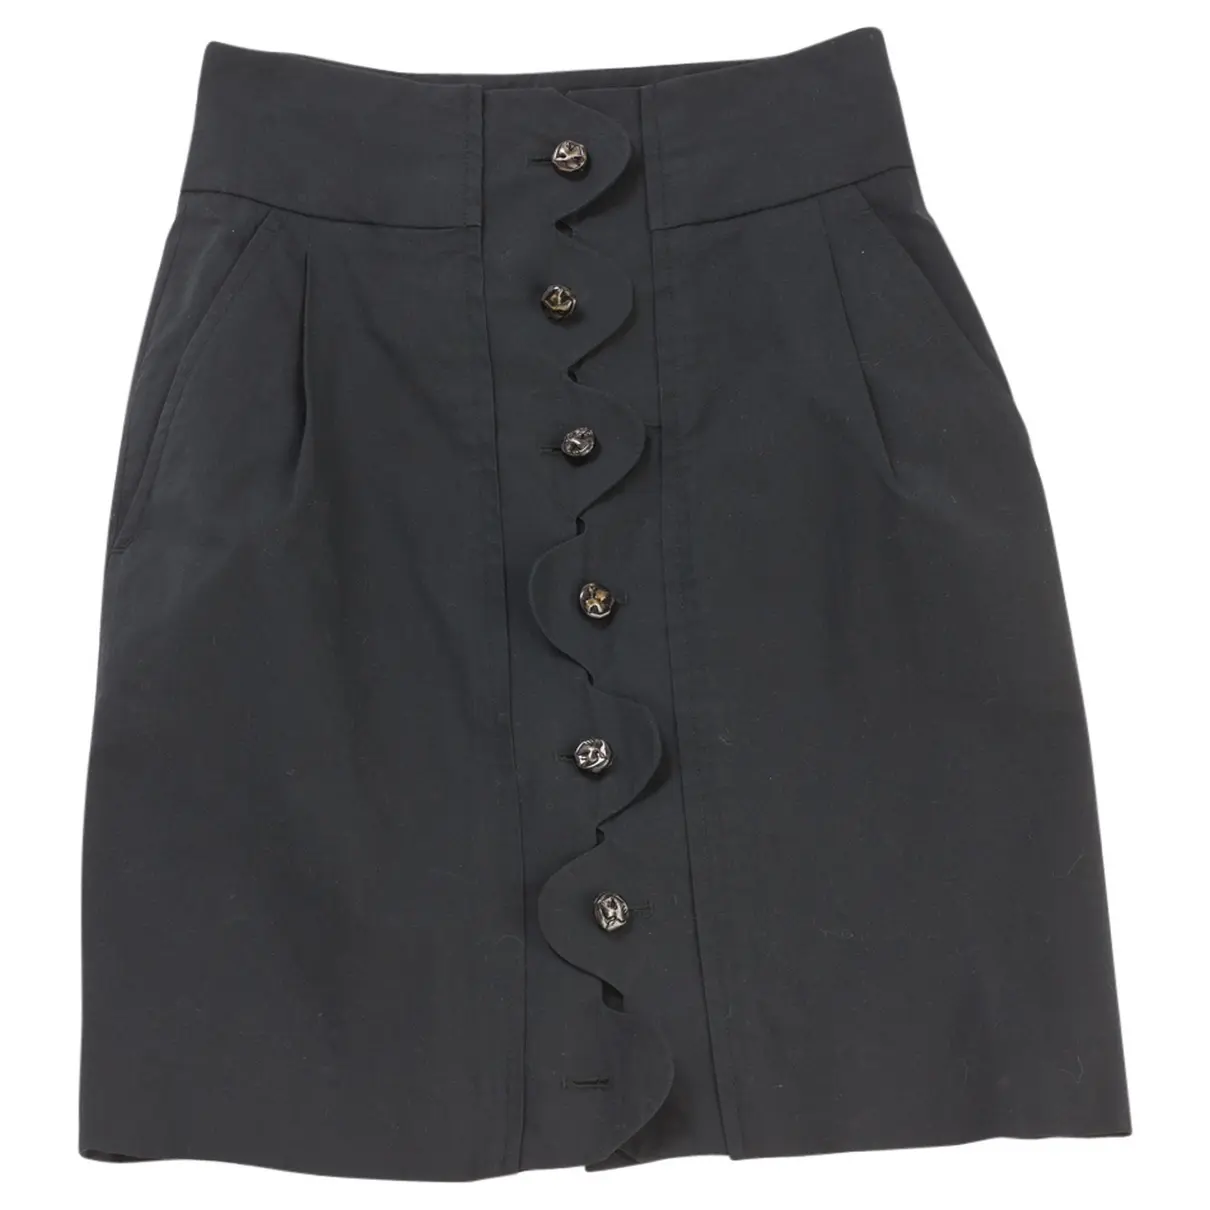 Black Skirt Yves Saint Laurent - Vintage